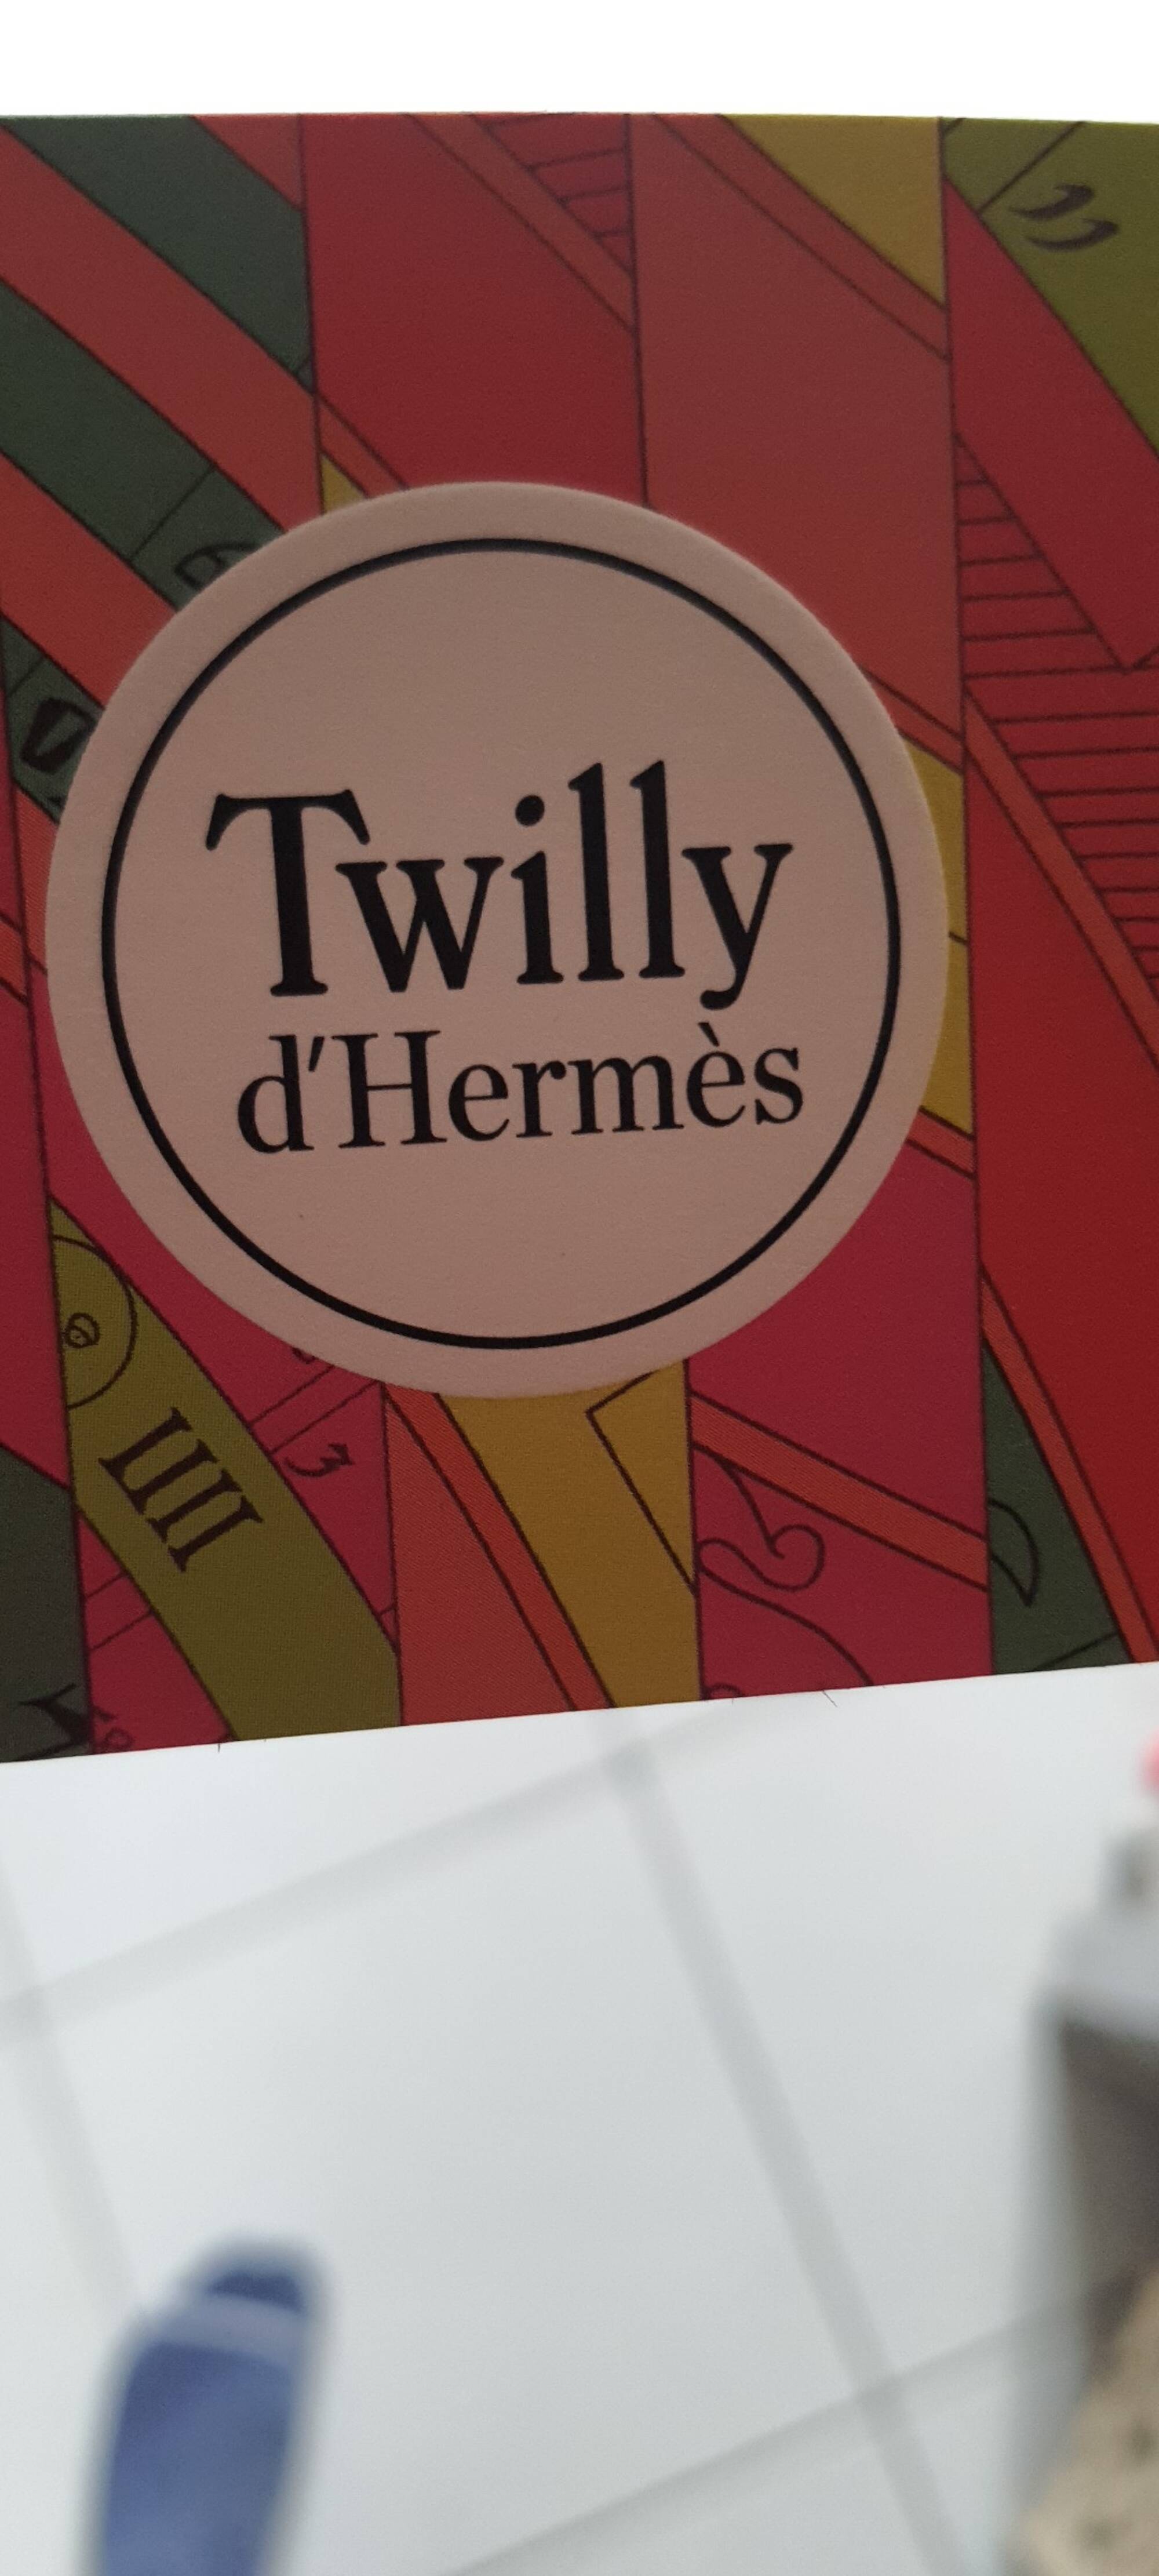 HERMES - Twilly d'Hermès - Savon parfumé